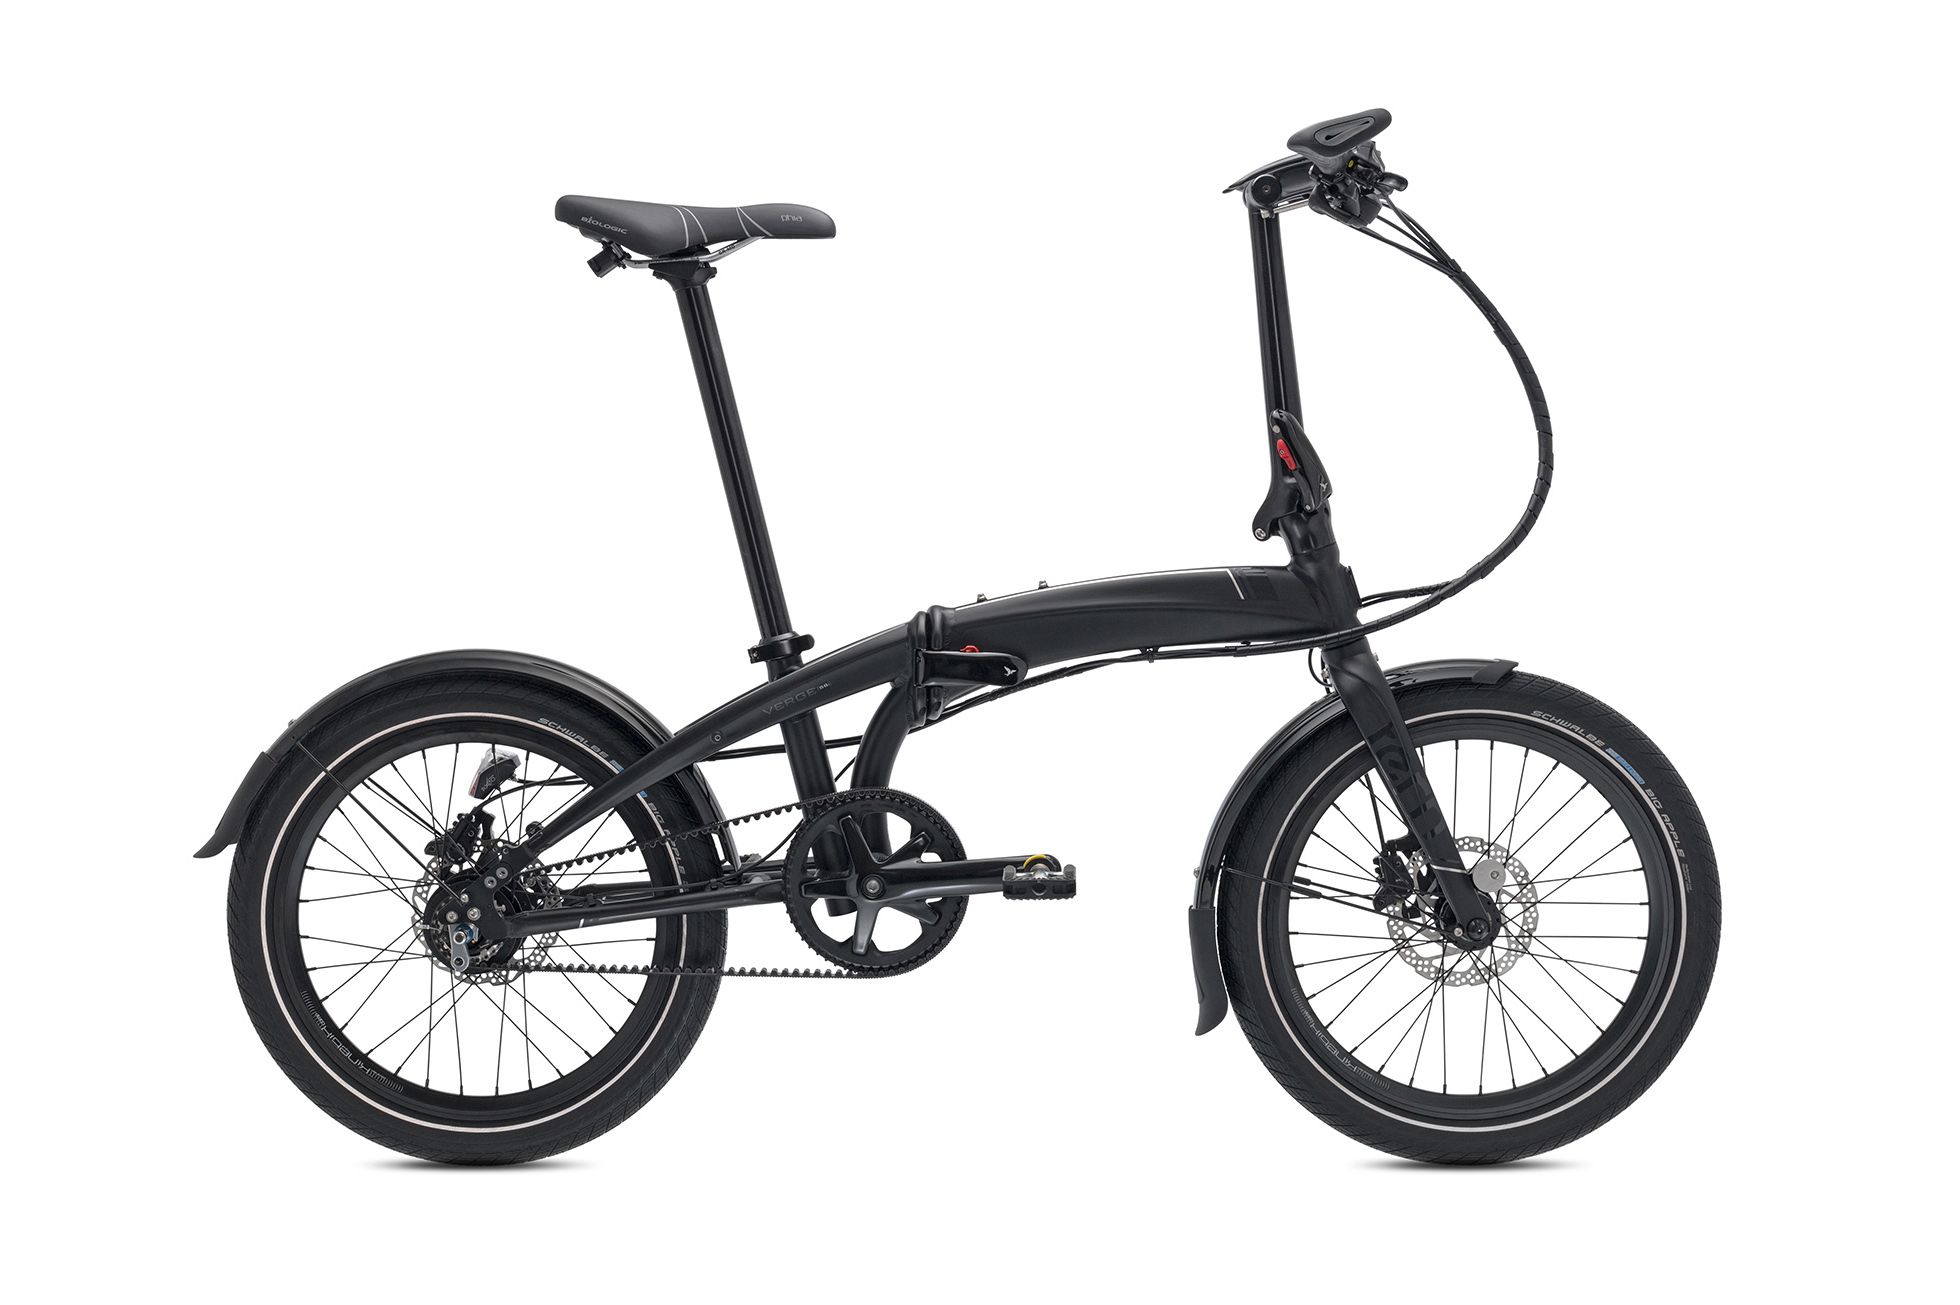  Отзывы о Складном велосипеде Tern Verge S8i 2016